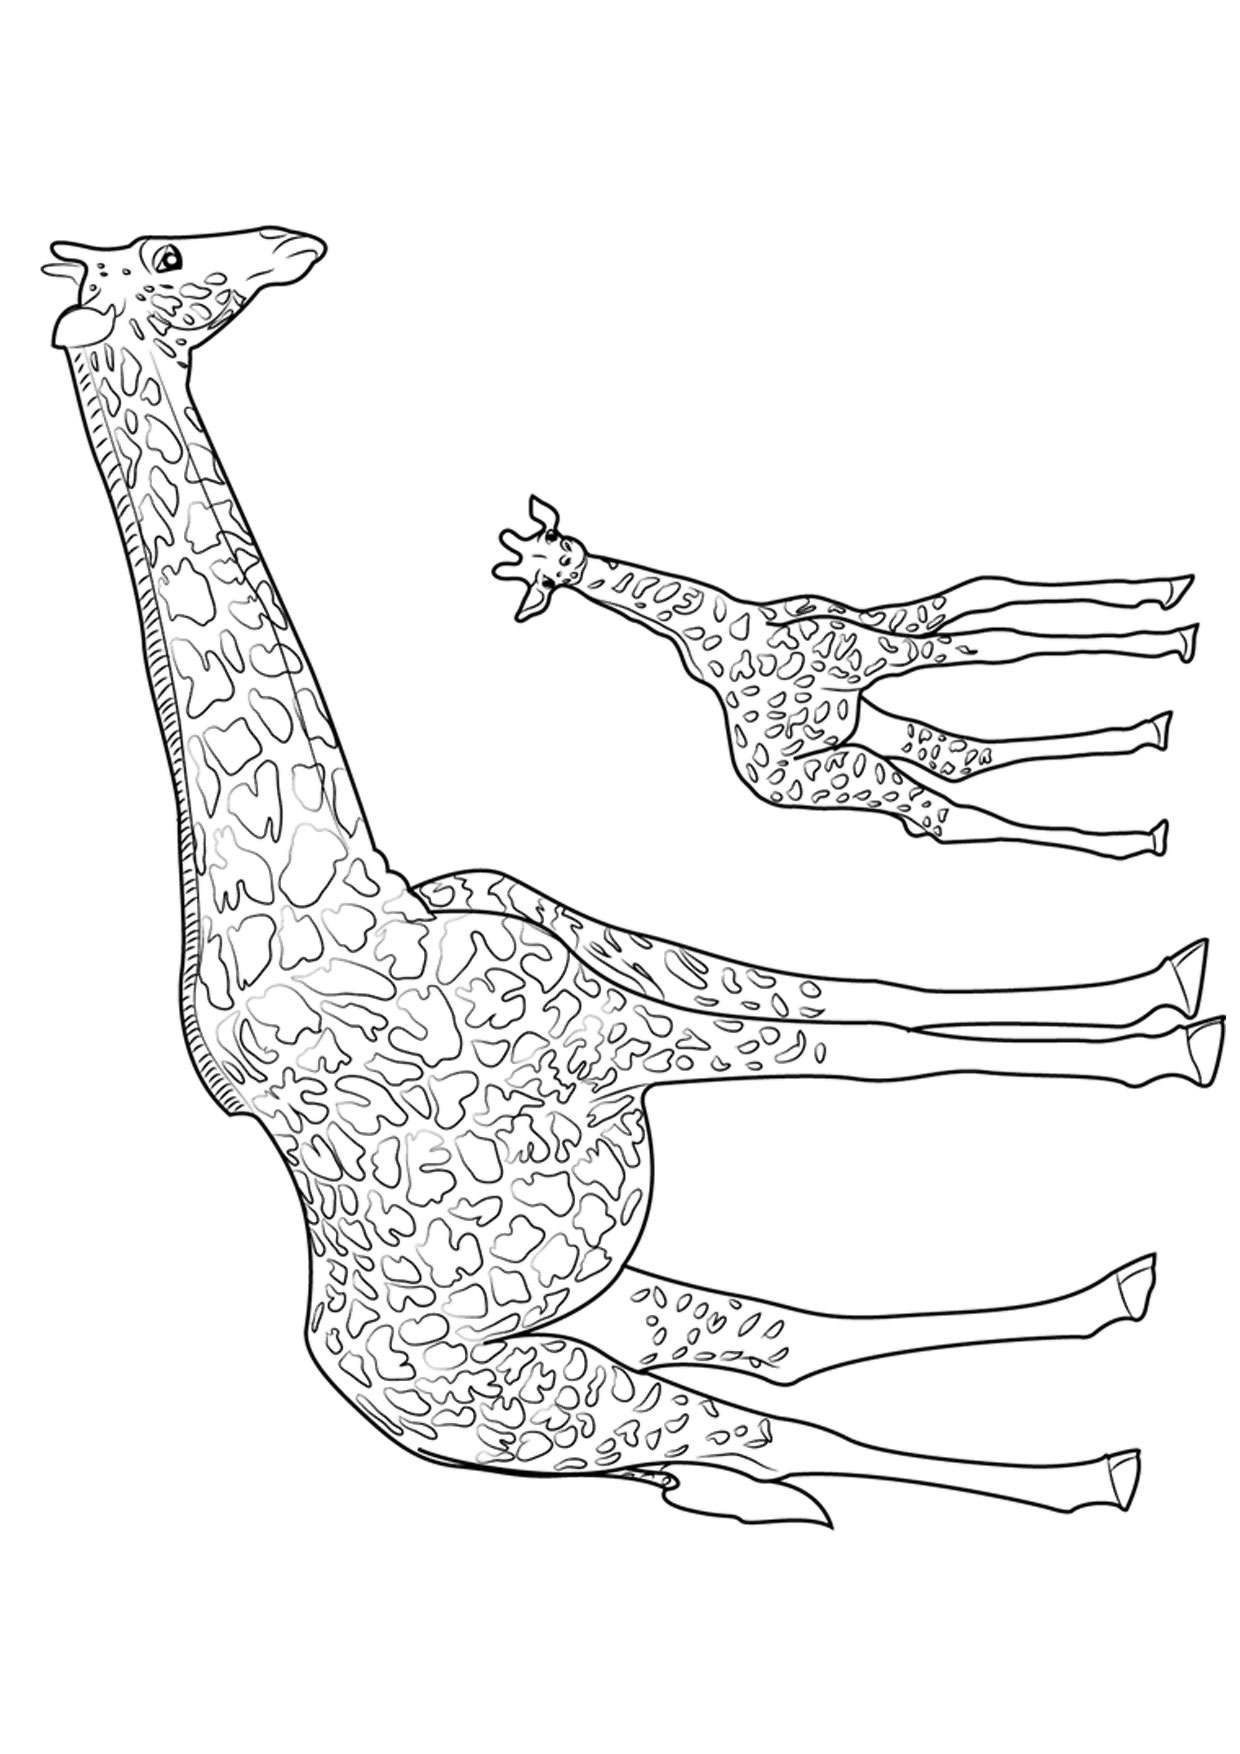 Disegno di giraffa 12